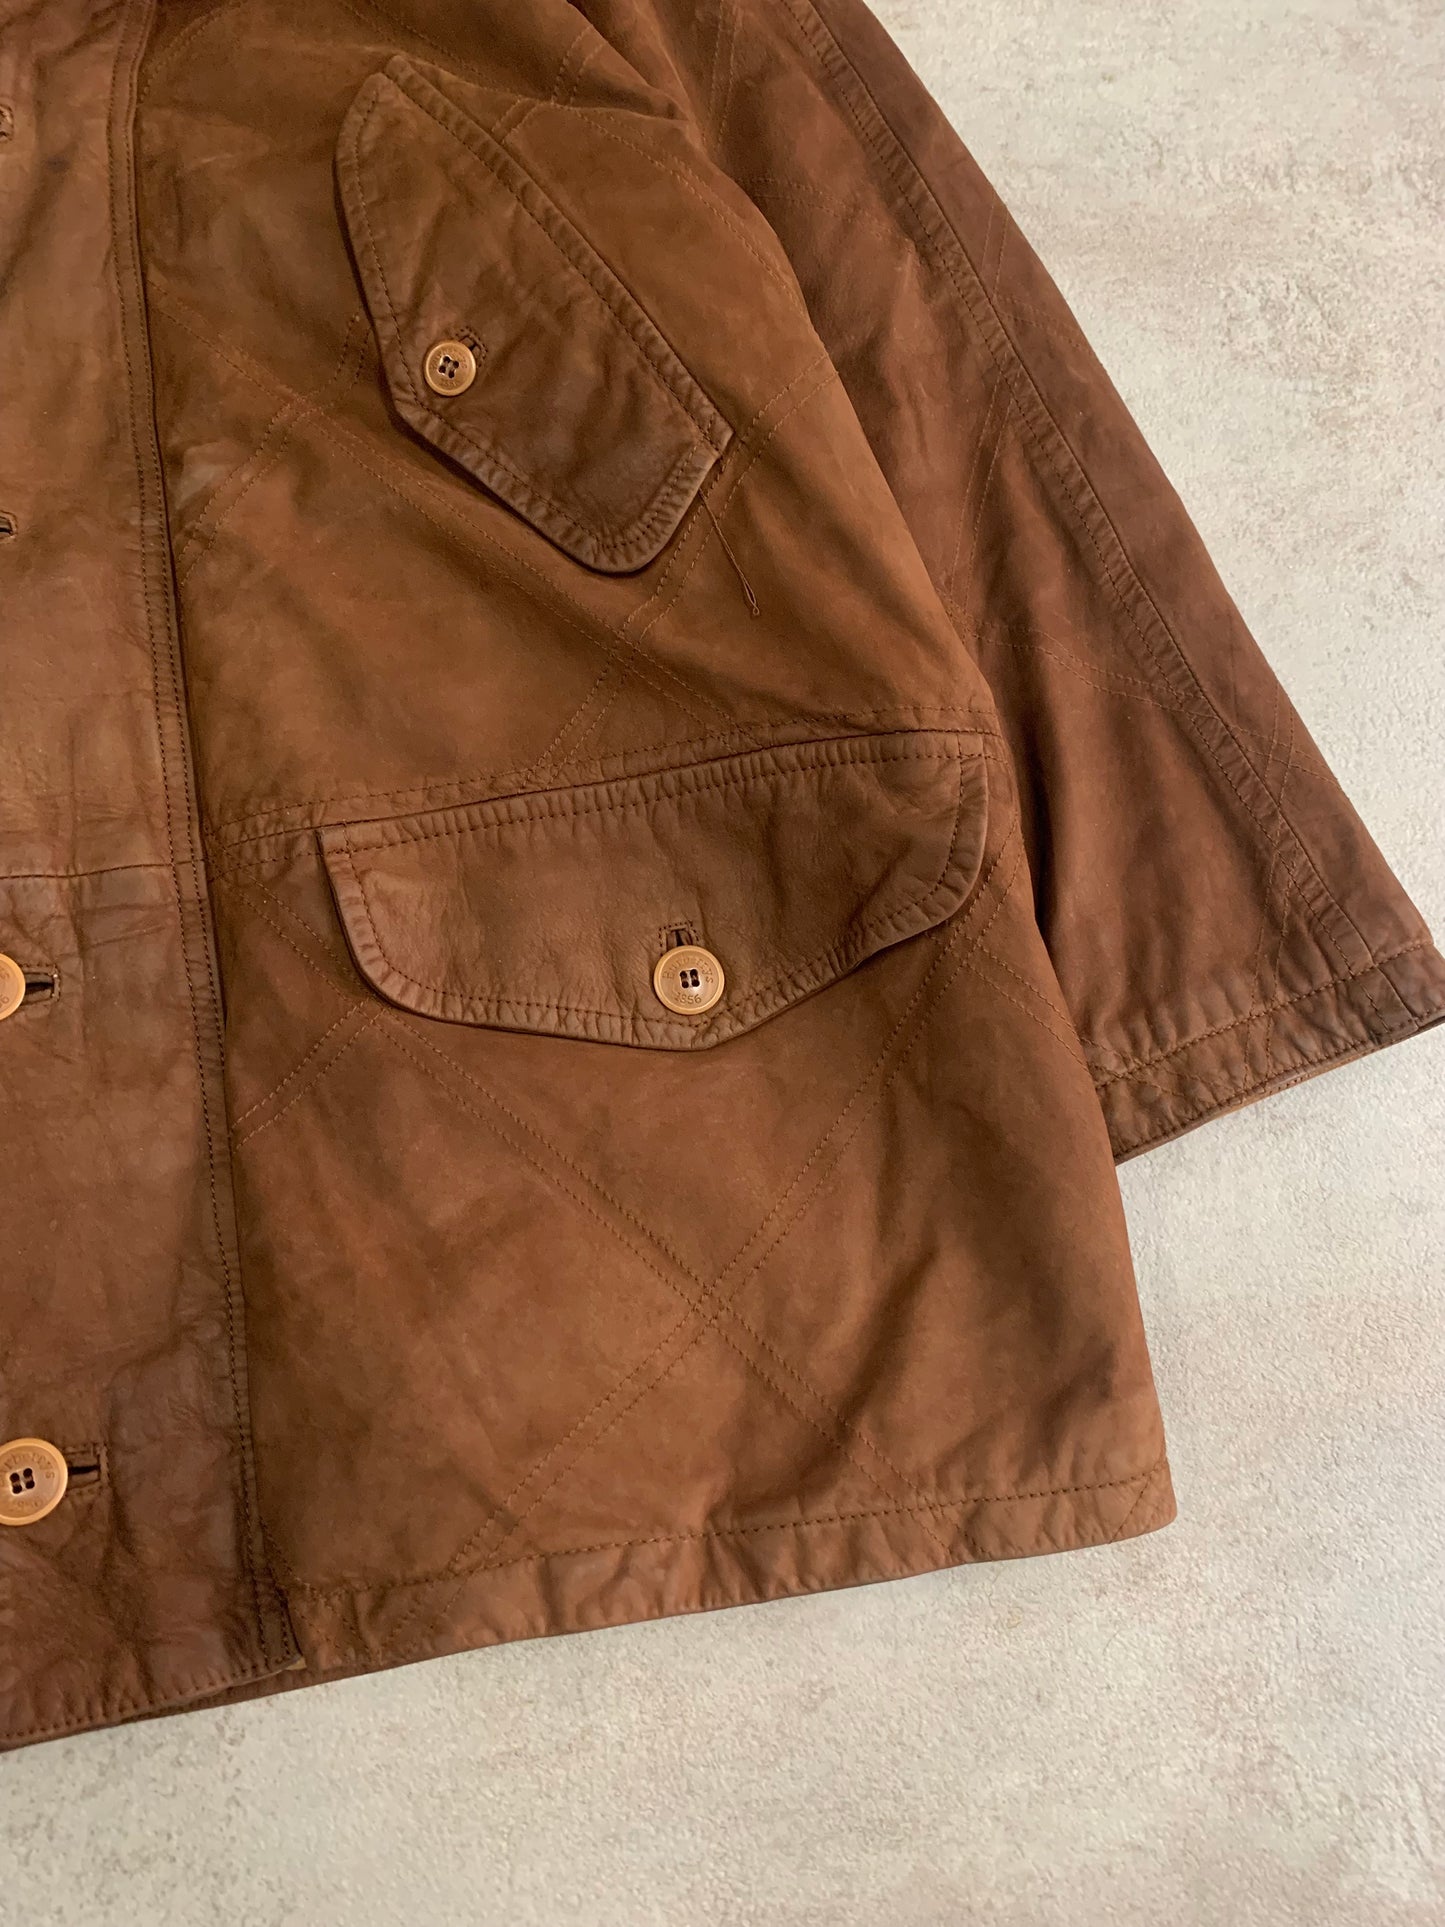 Burberry Novacheck 80s Vintage Long Leather Coat - L